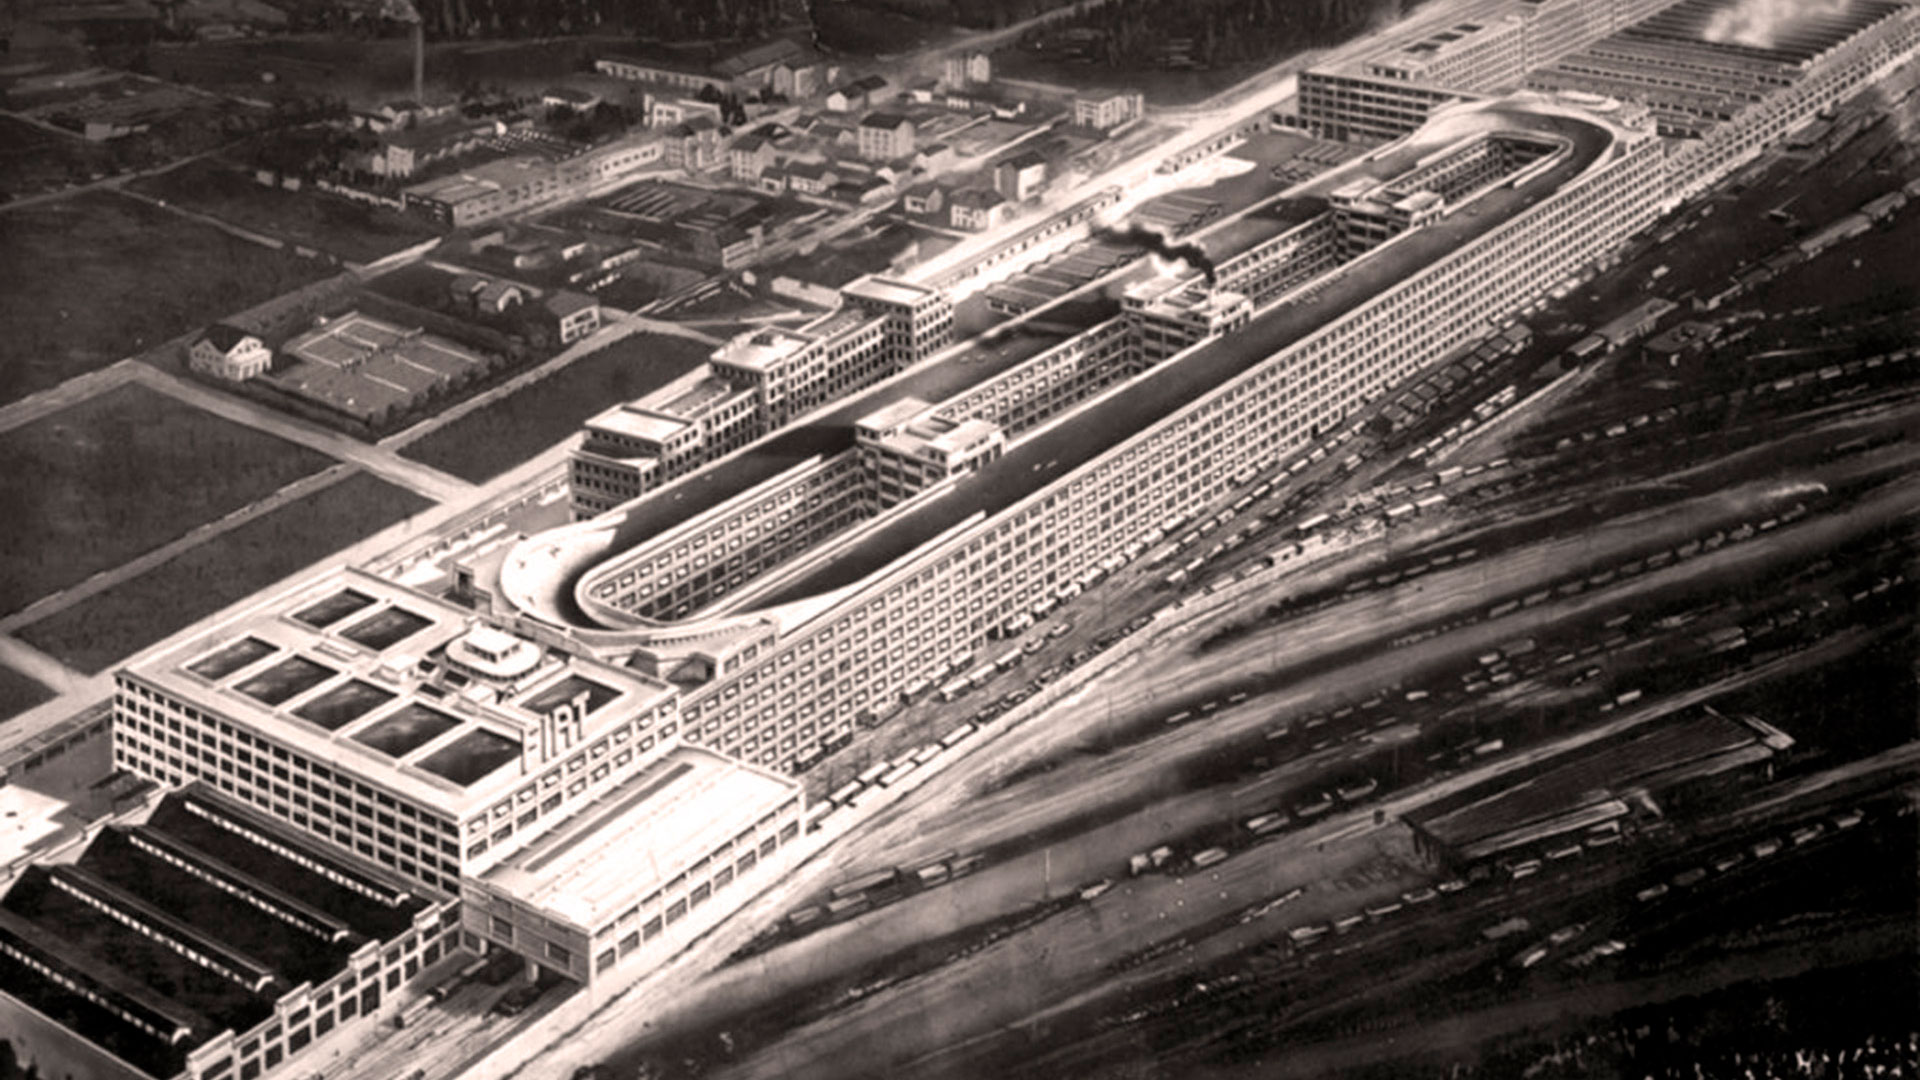 La pista de pruebas de Fiat en Torino era una extensión de 2,1 km en el techo de la fábrica. Allí hizo sus primeros ensayos el Fiat Turbina